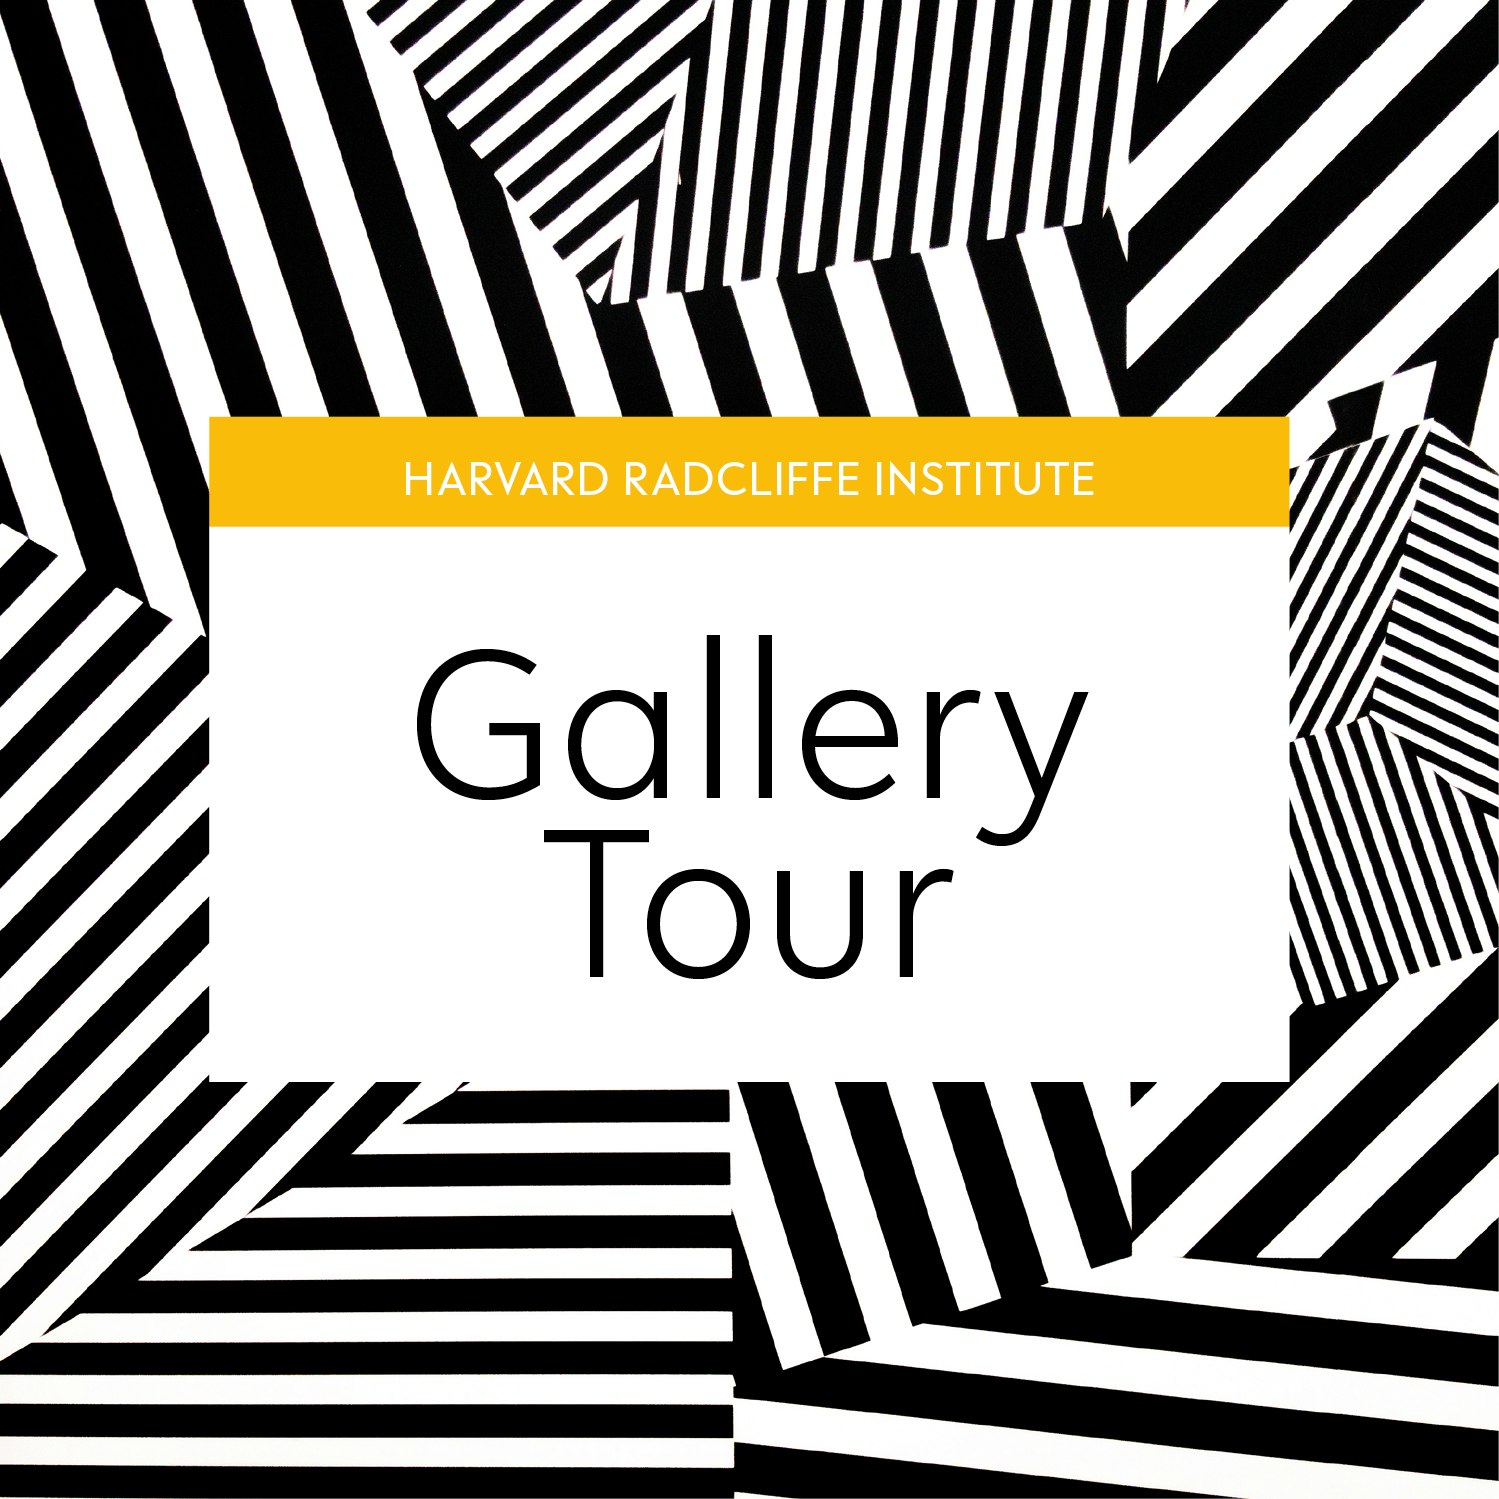 Harvard Radcliffe Institute Gallery Tour